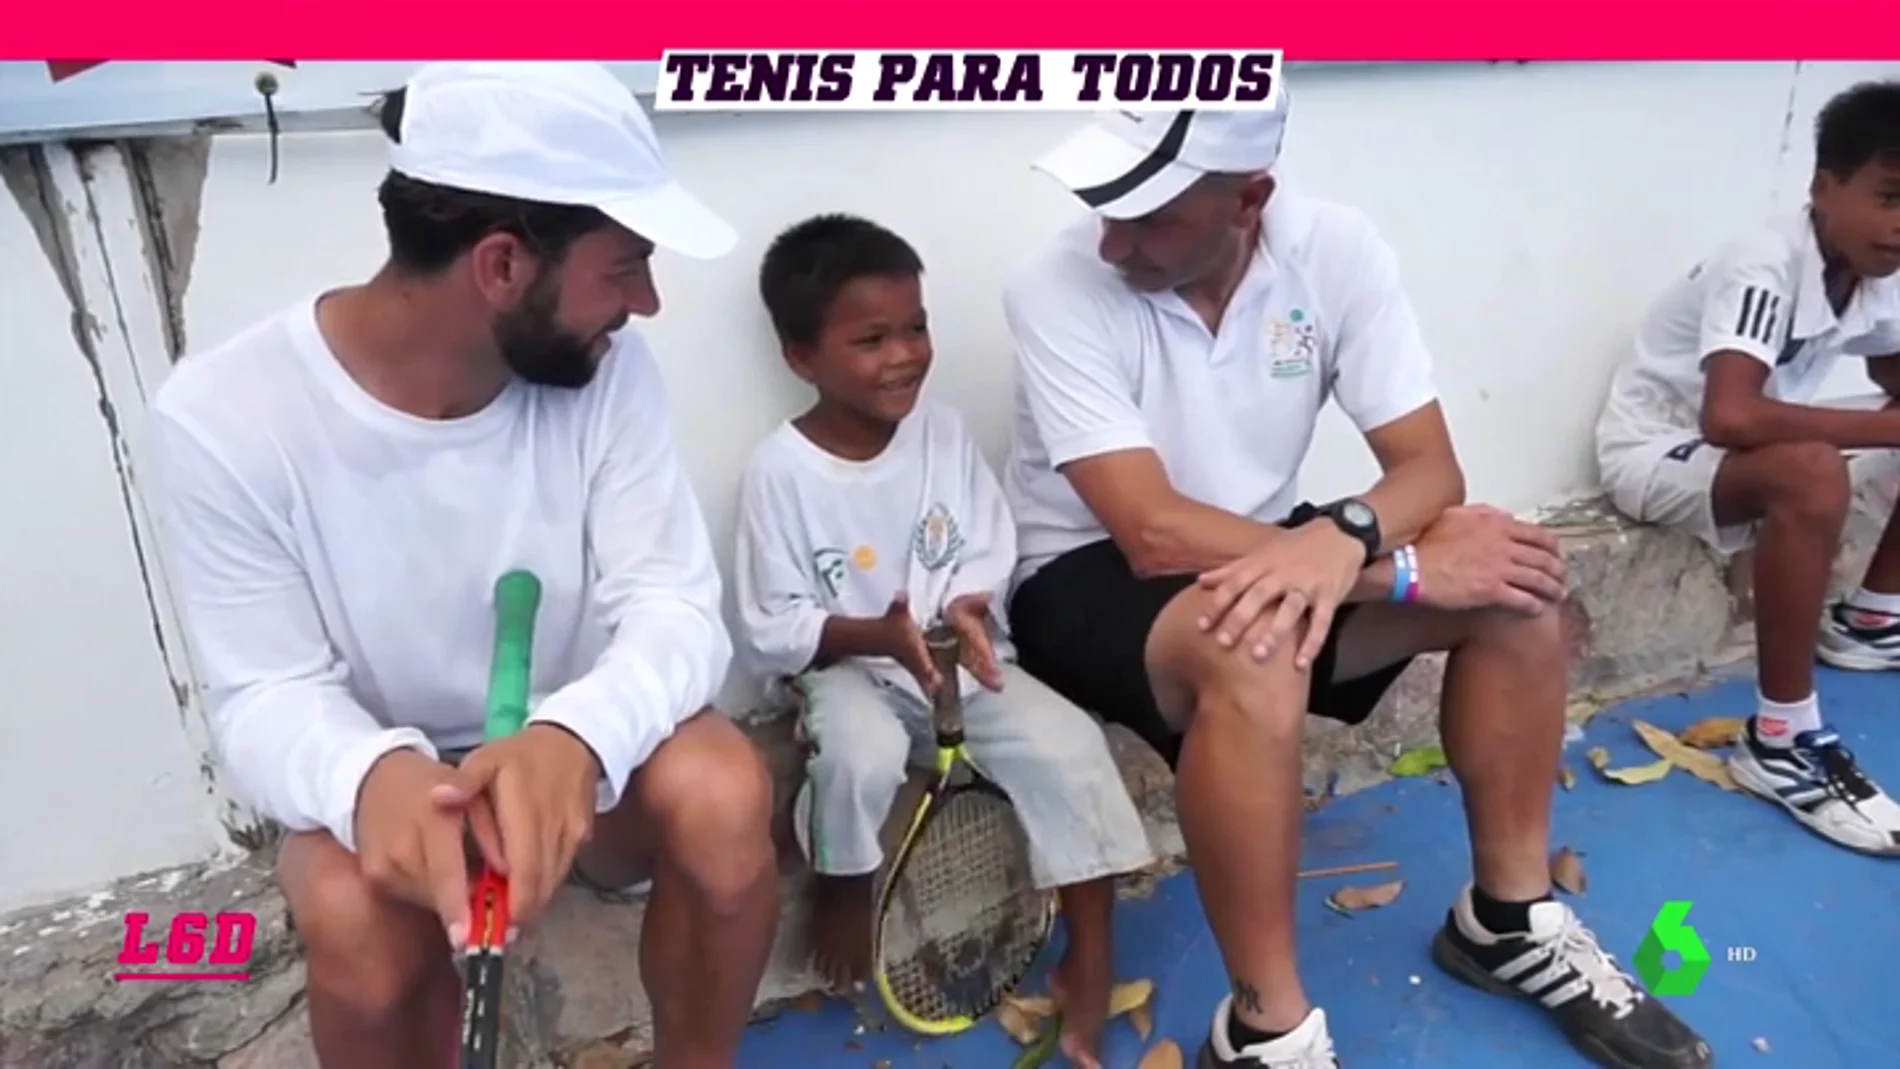 El tenis como herramienta de ayuda a los más necesitados: así es Tenis EID